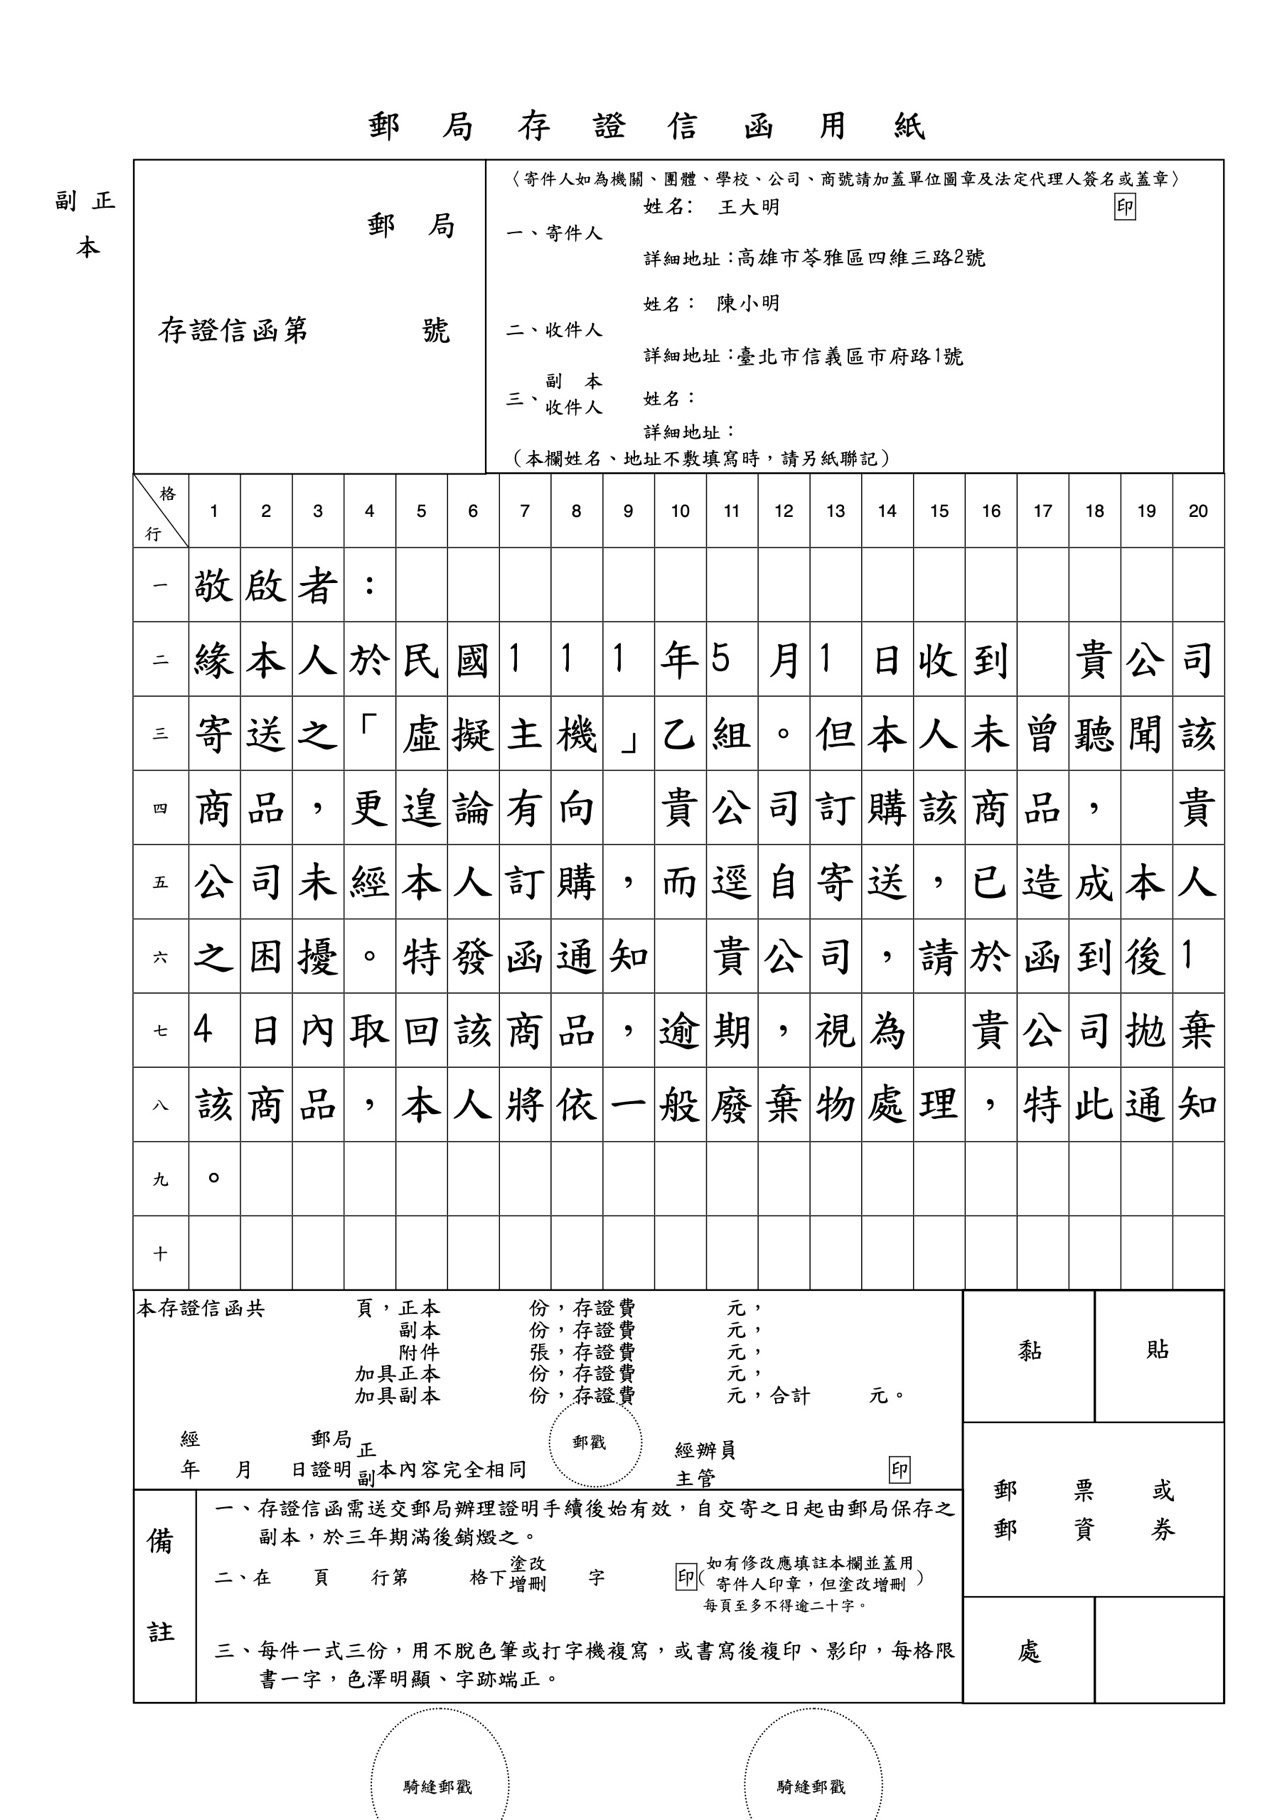 台灣郵局存證信函產生器 Pro